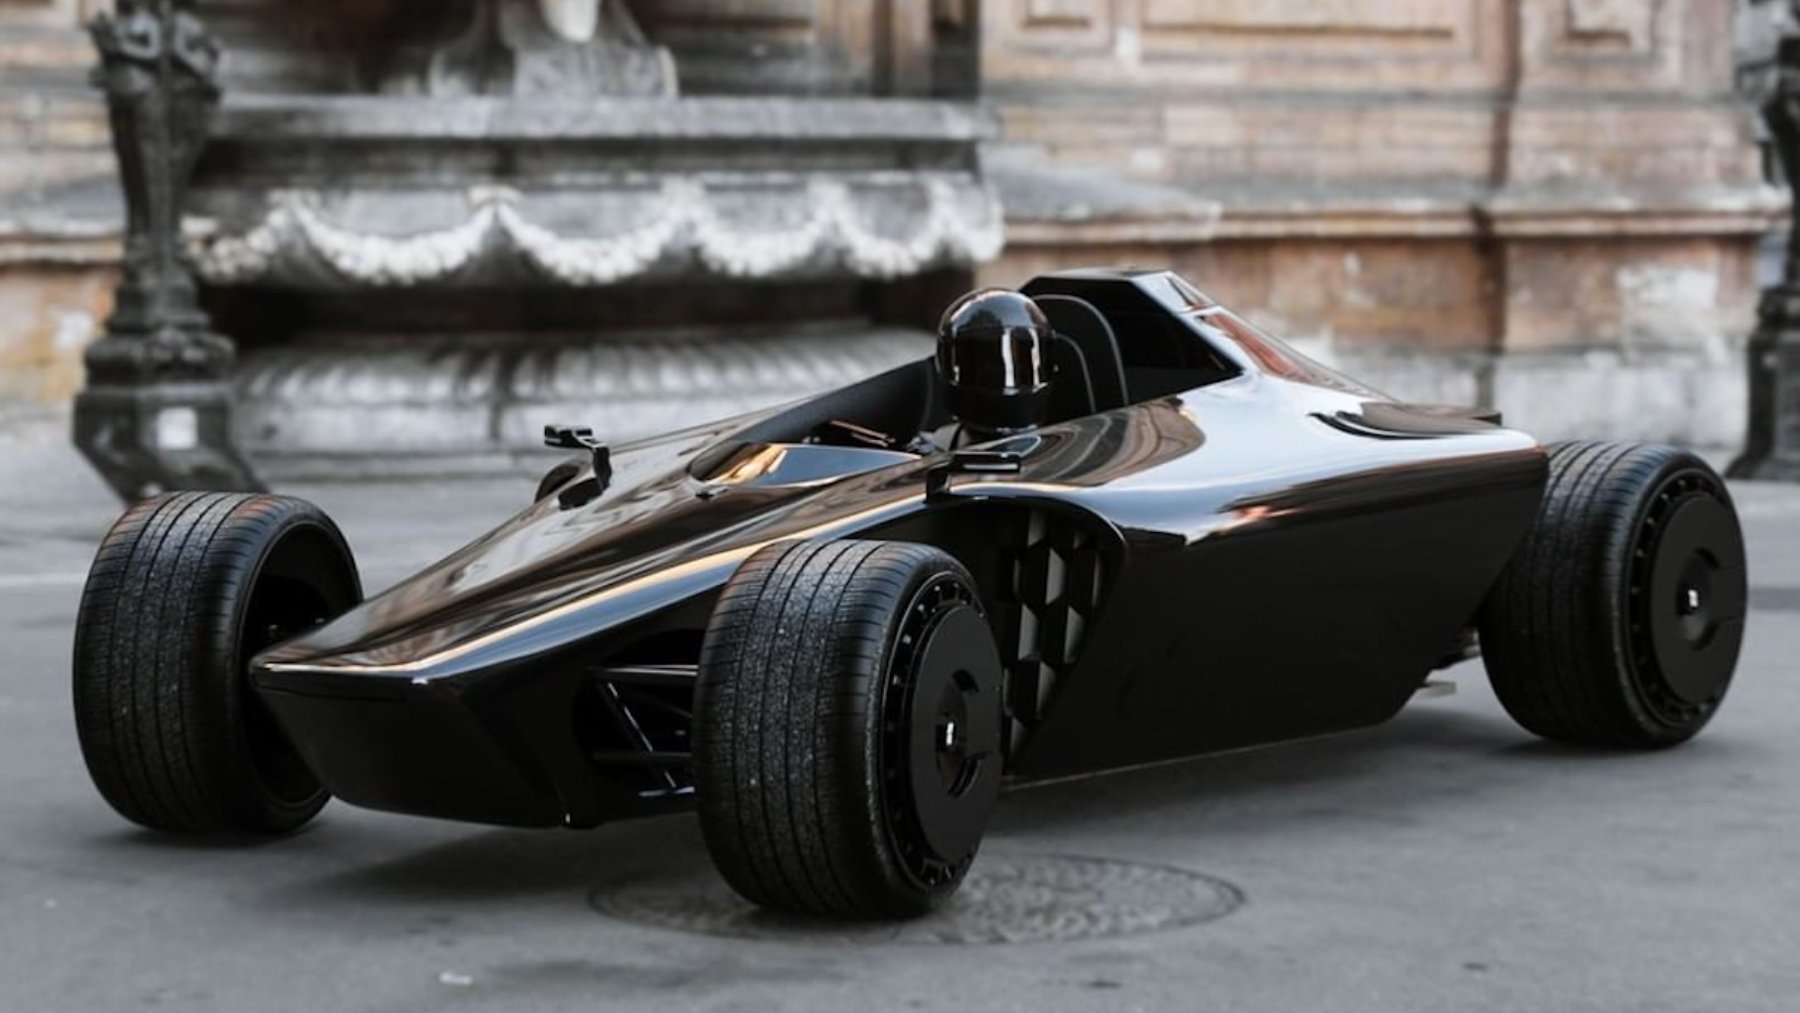 El coche eléctrico que se remonta a los modelos de Fórmula 1 de los años 50 y 60